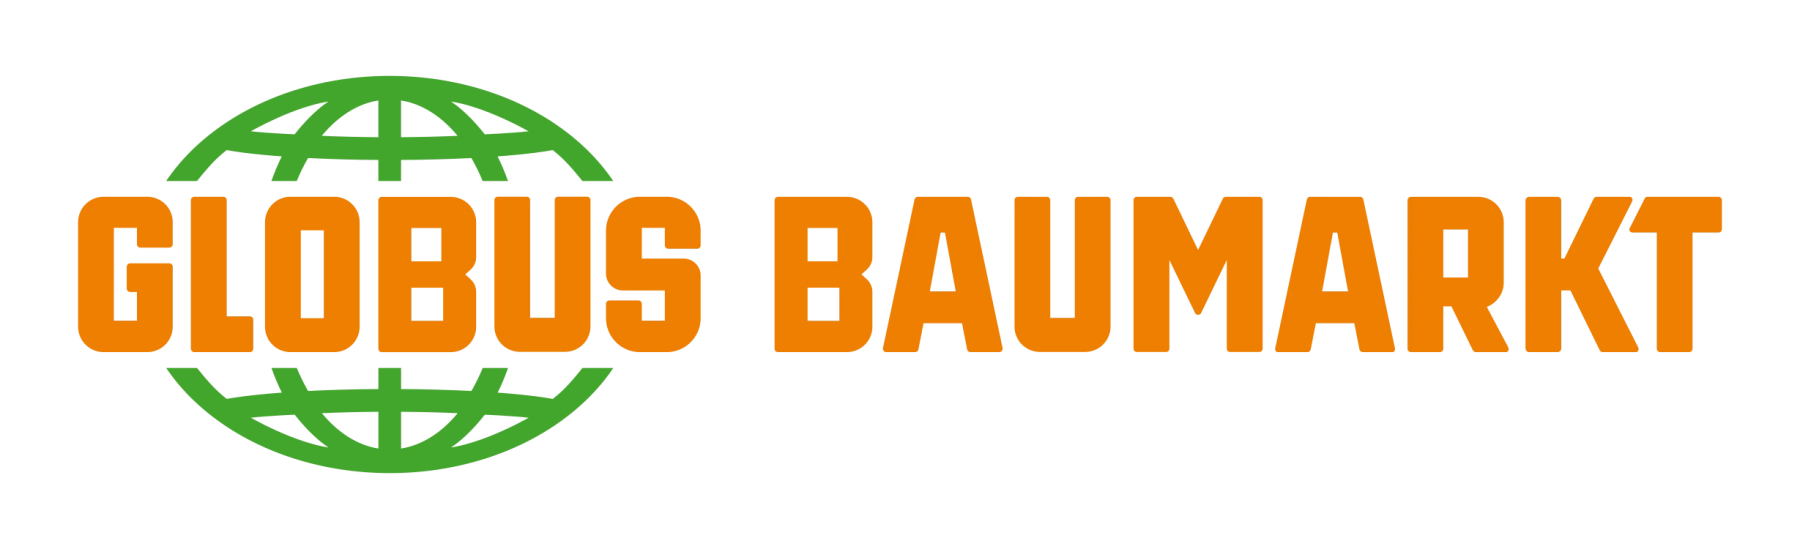 Globus_Baumarkt_Logo_digital_wide_RGB